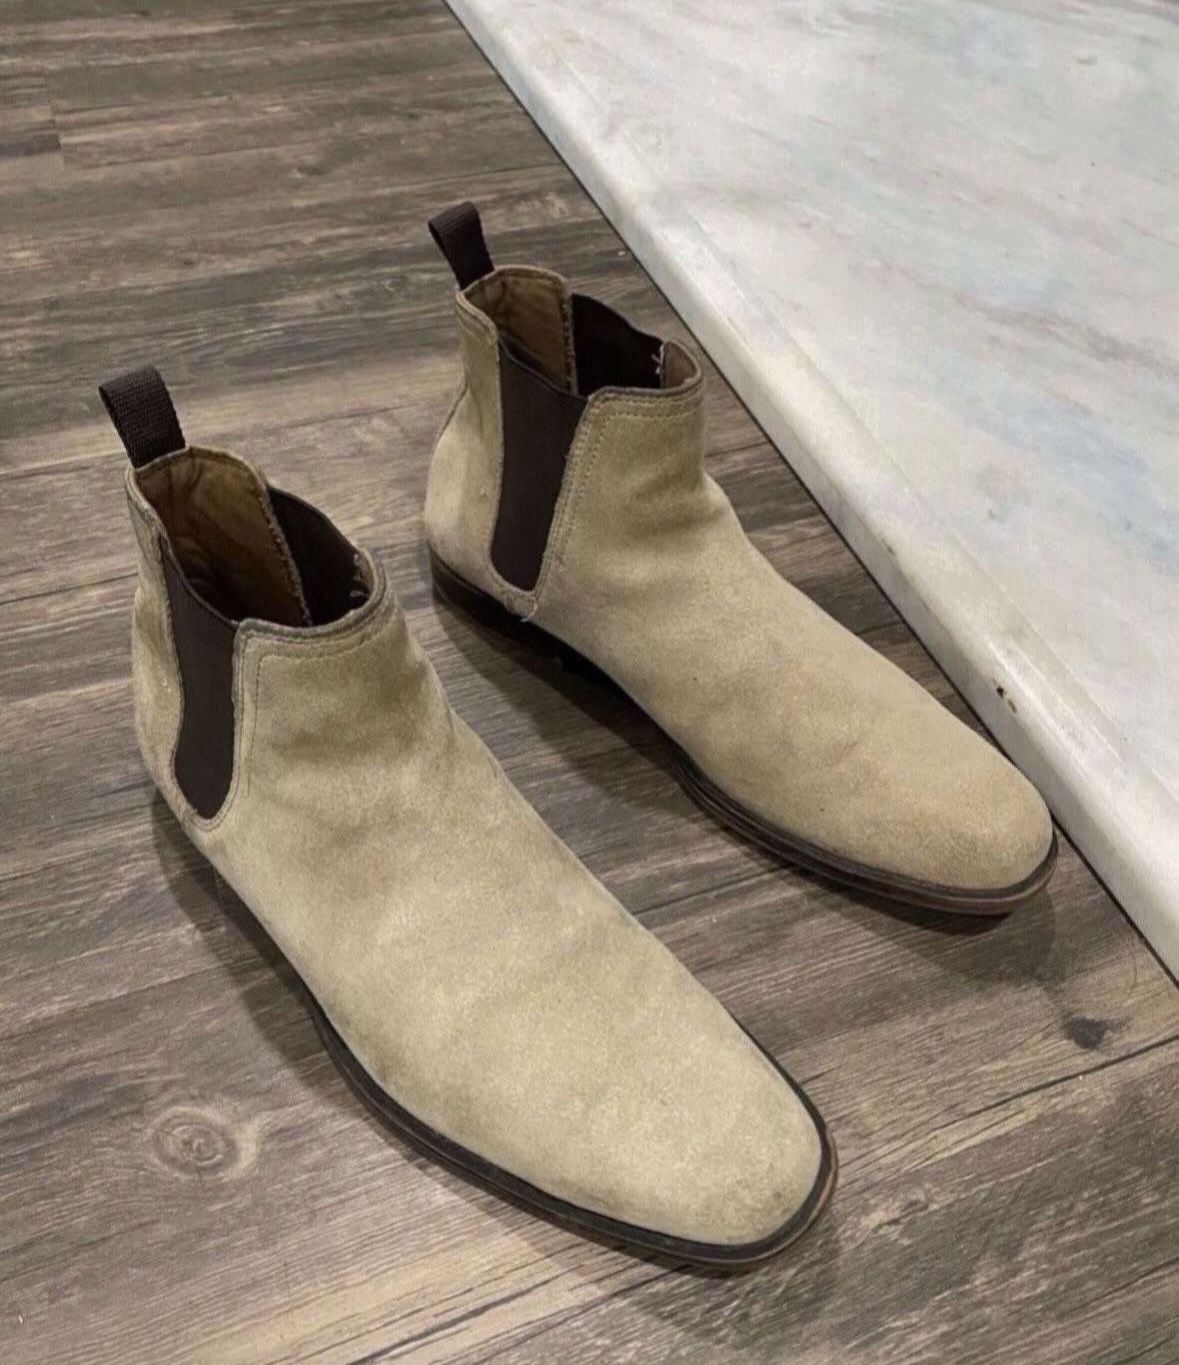 Men’s Size 9 Aldo Chelsea Boots - Tan